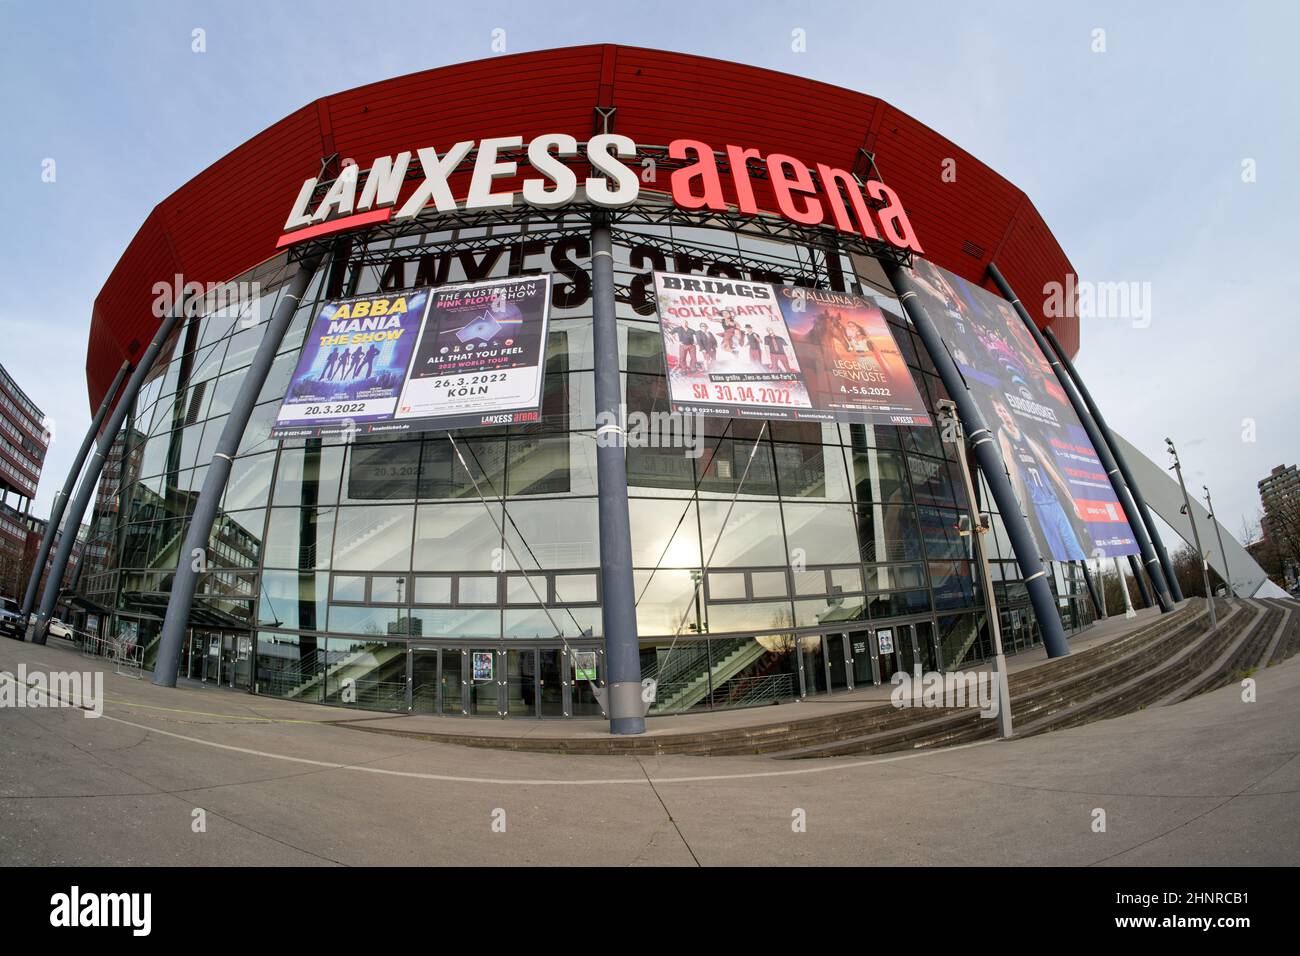 Colonia, Germania - 08 dicembre 2021: lanxess Arena, la sala eventi più frequentata dell'europa continentale Foto Stock